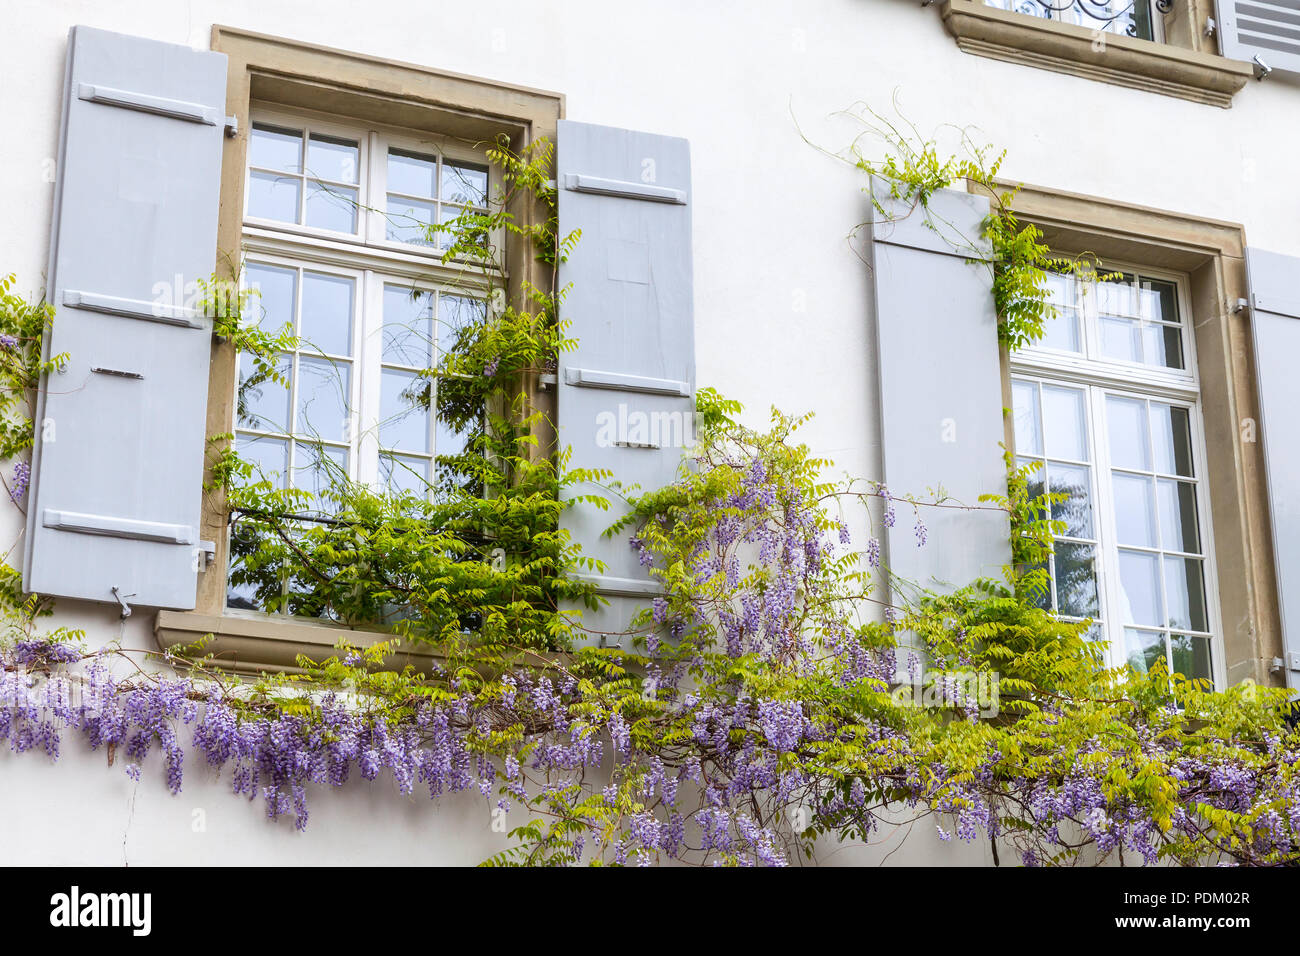 Wohn Hausfassade mit Fenstern und Blumen an der Wand. Altstadt von Bern,  Schweiz Stockfotografie - Alamy